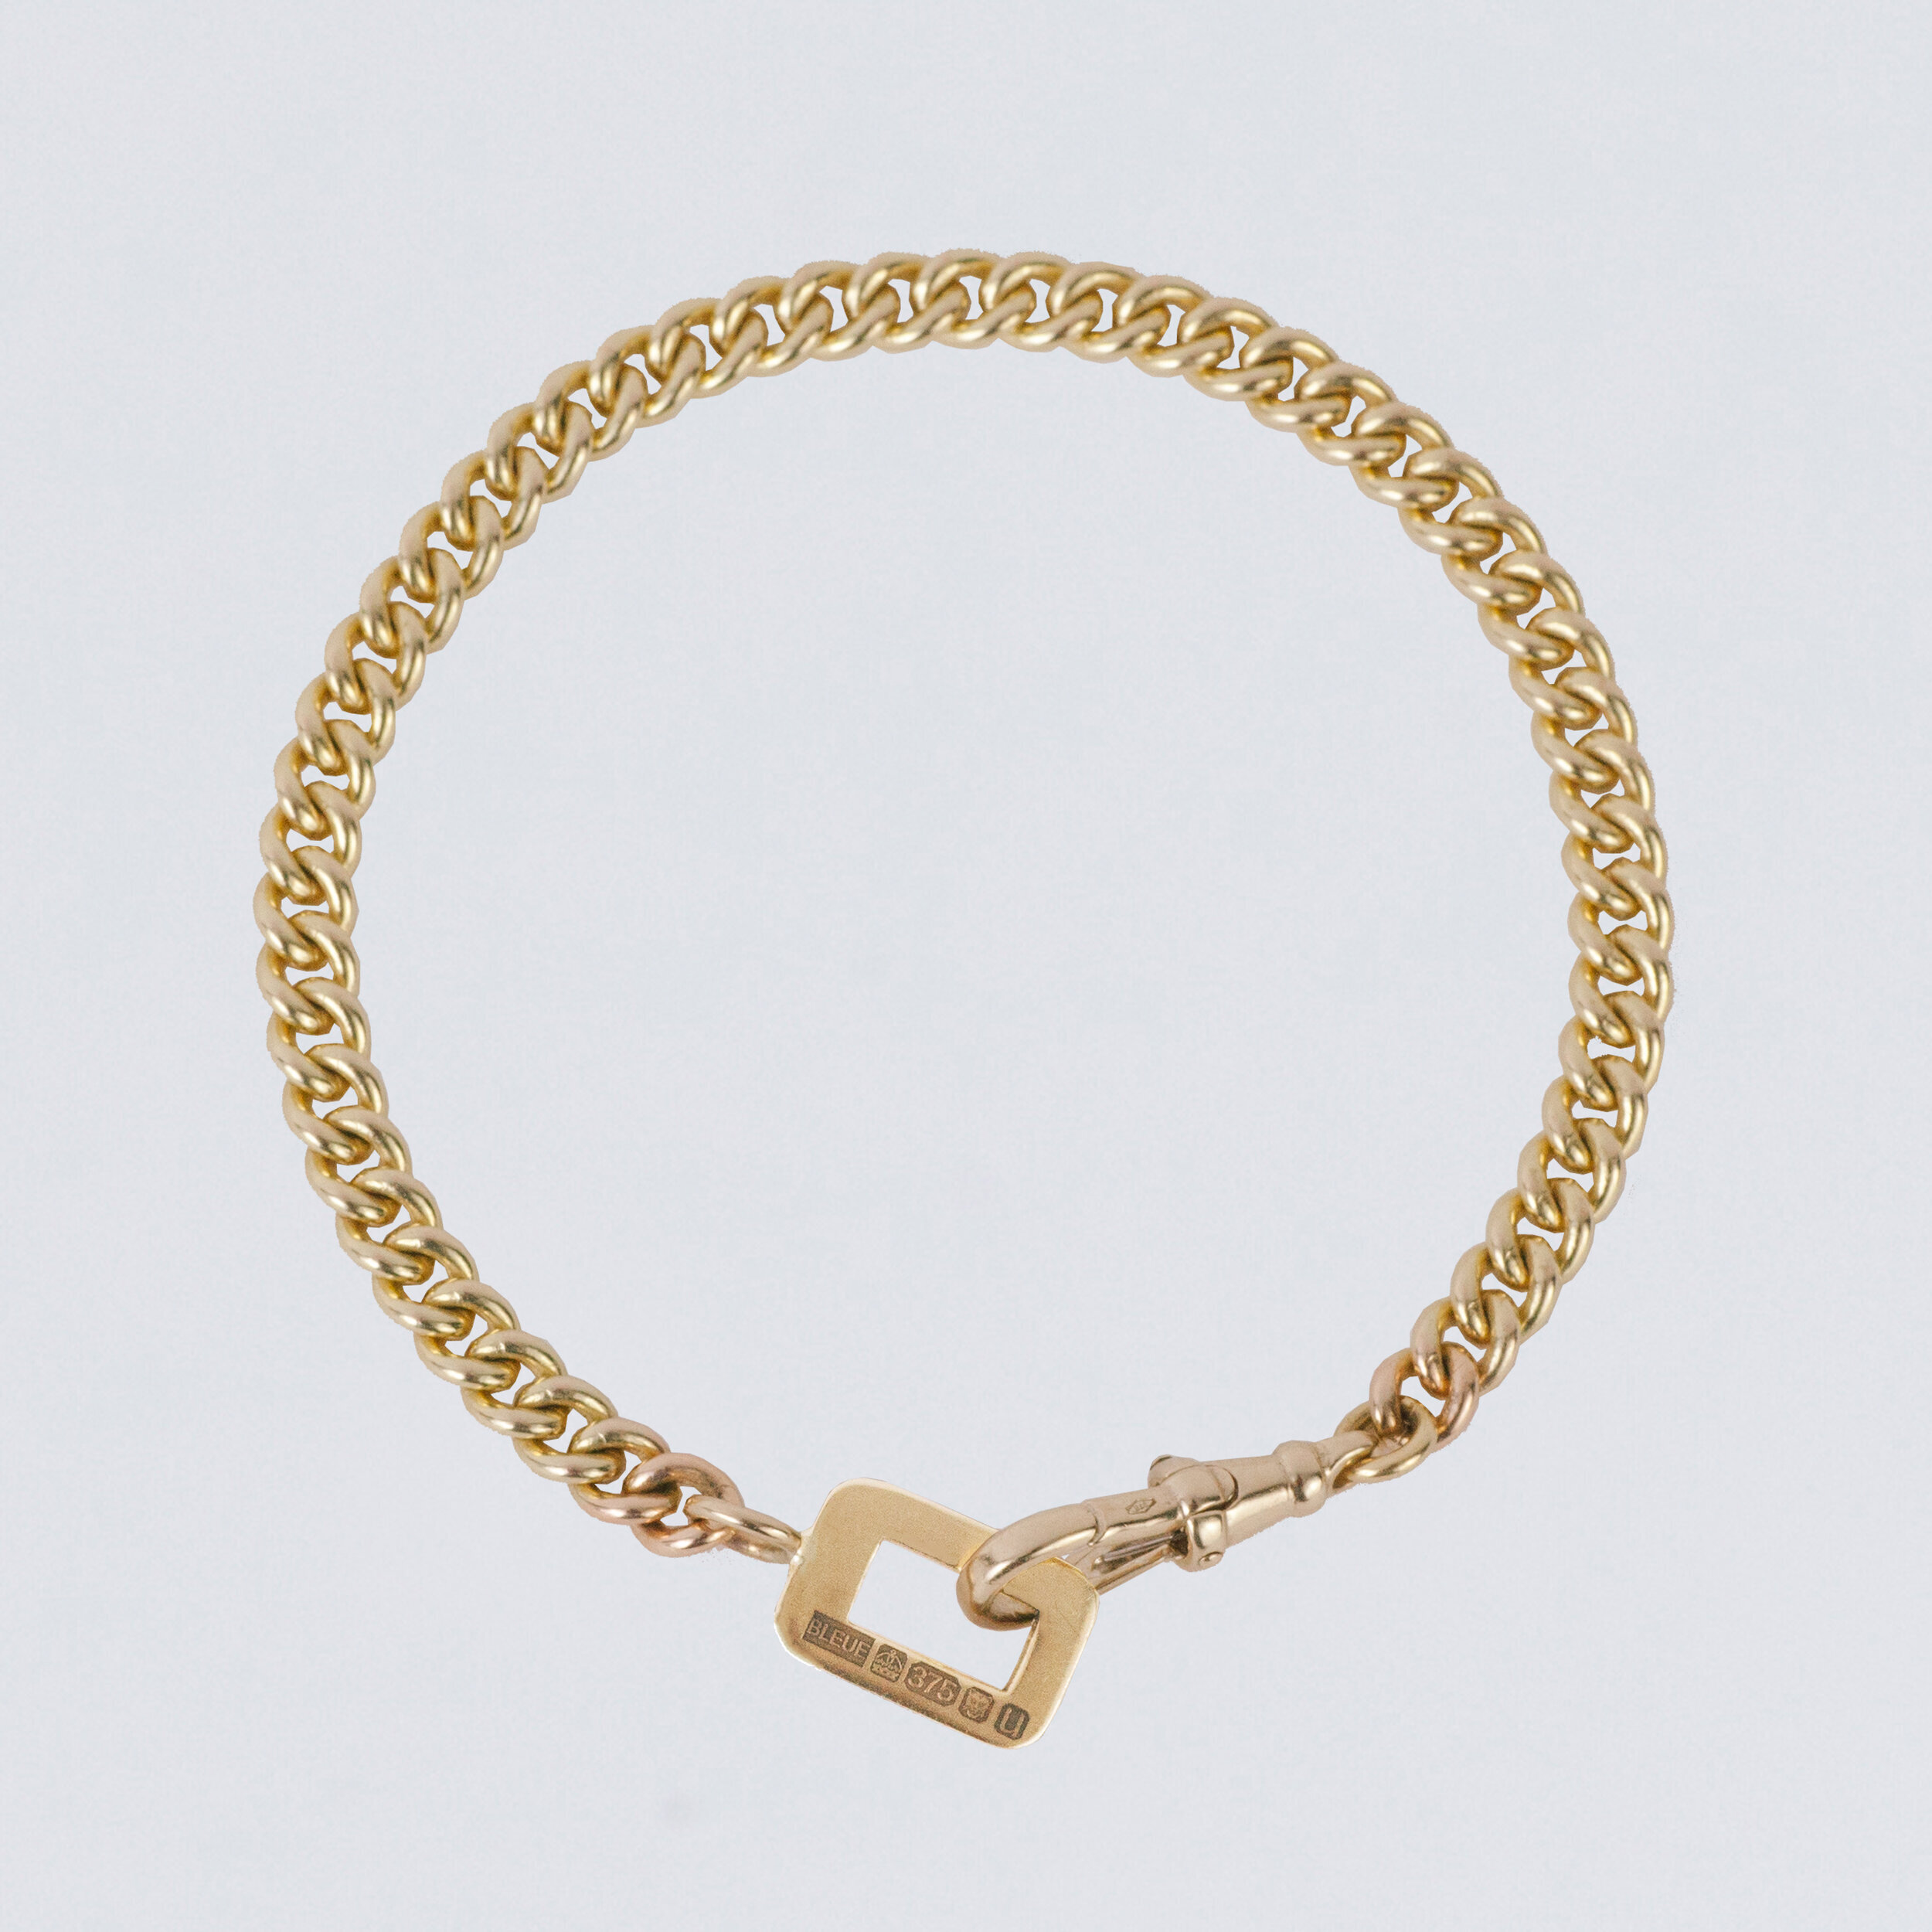 dudley+bracelet+gold.jpg